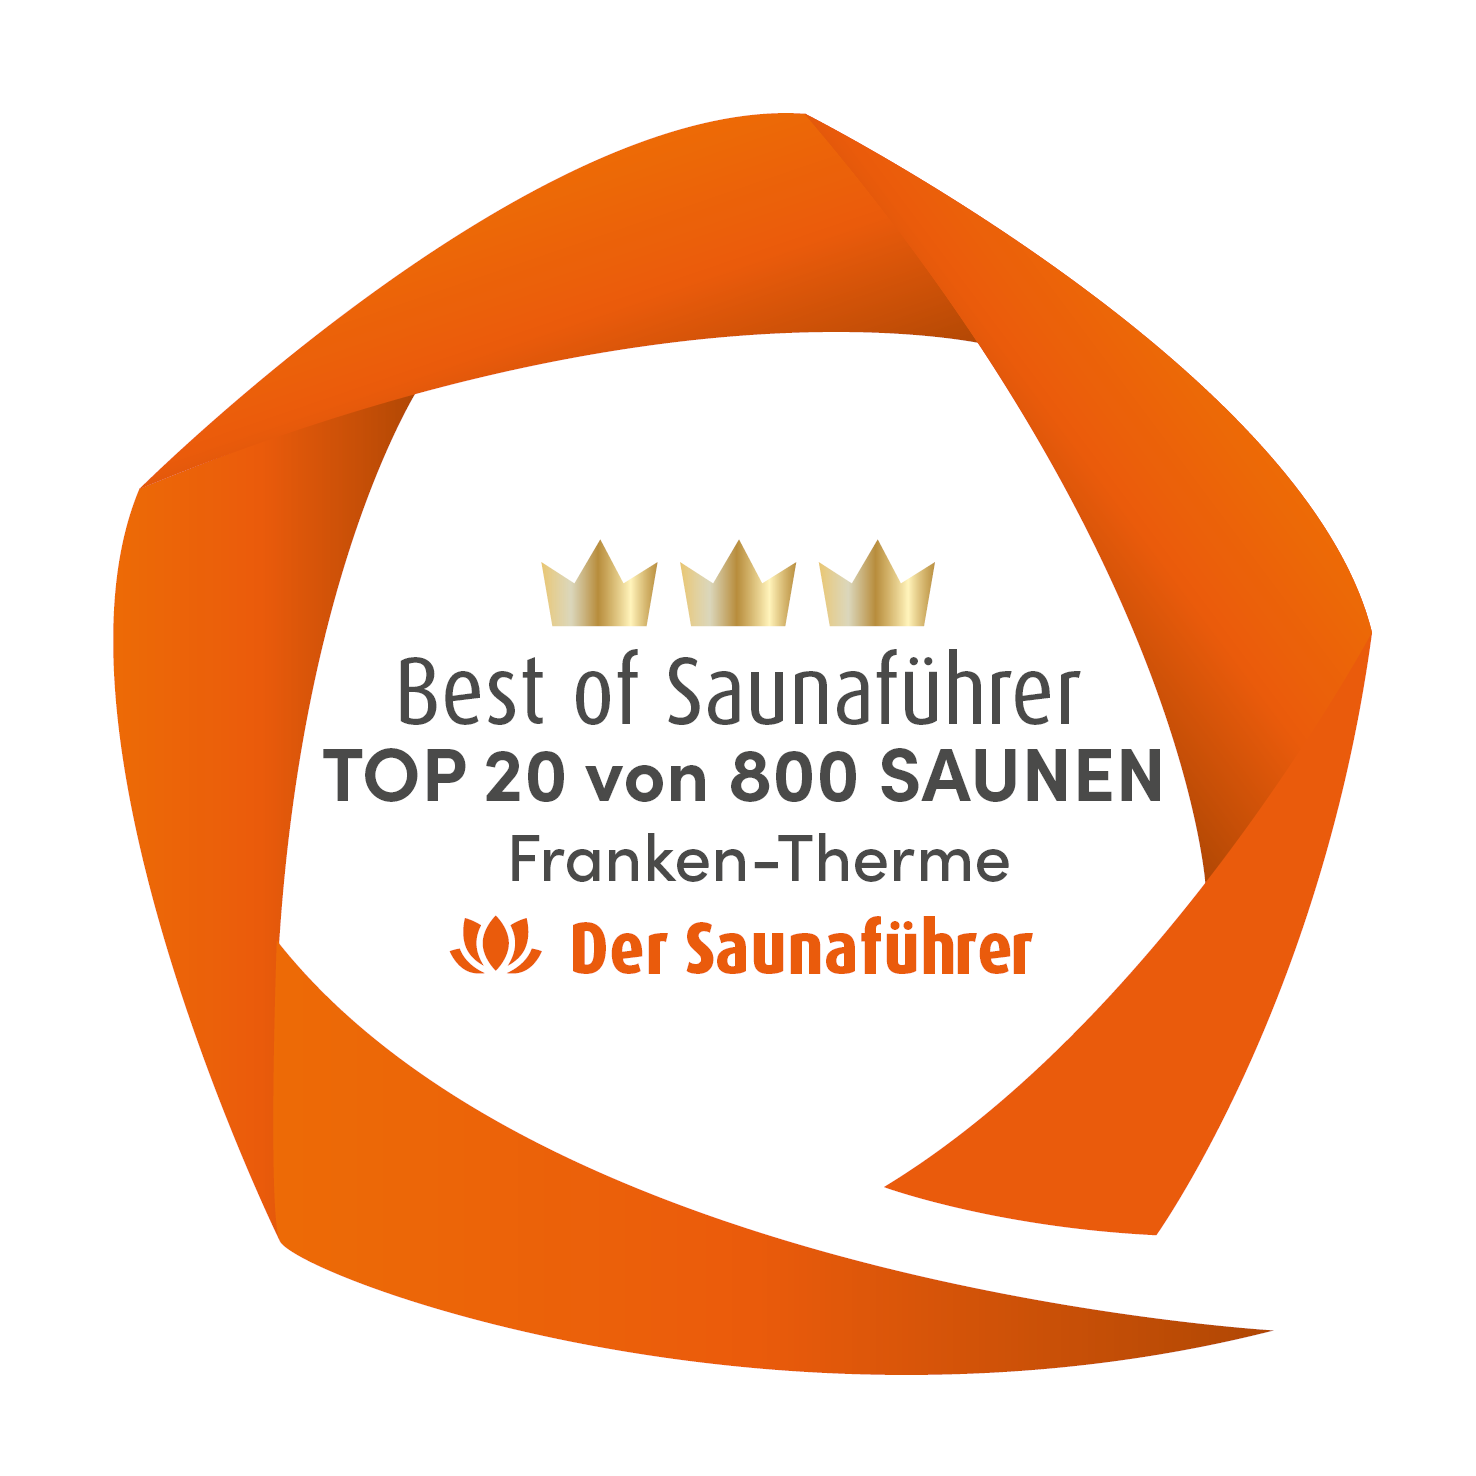 Best of Saunaführer TOP20 von 800 Saunen